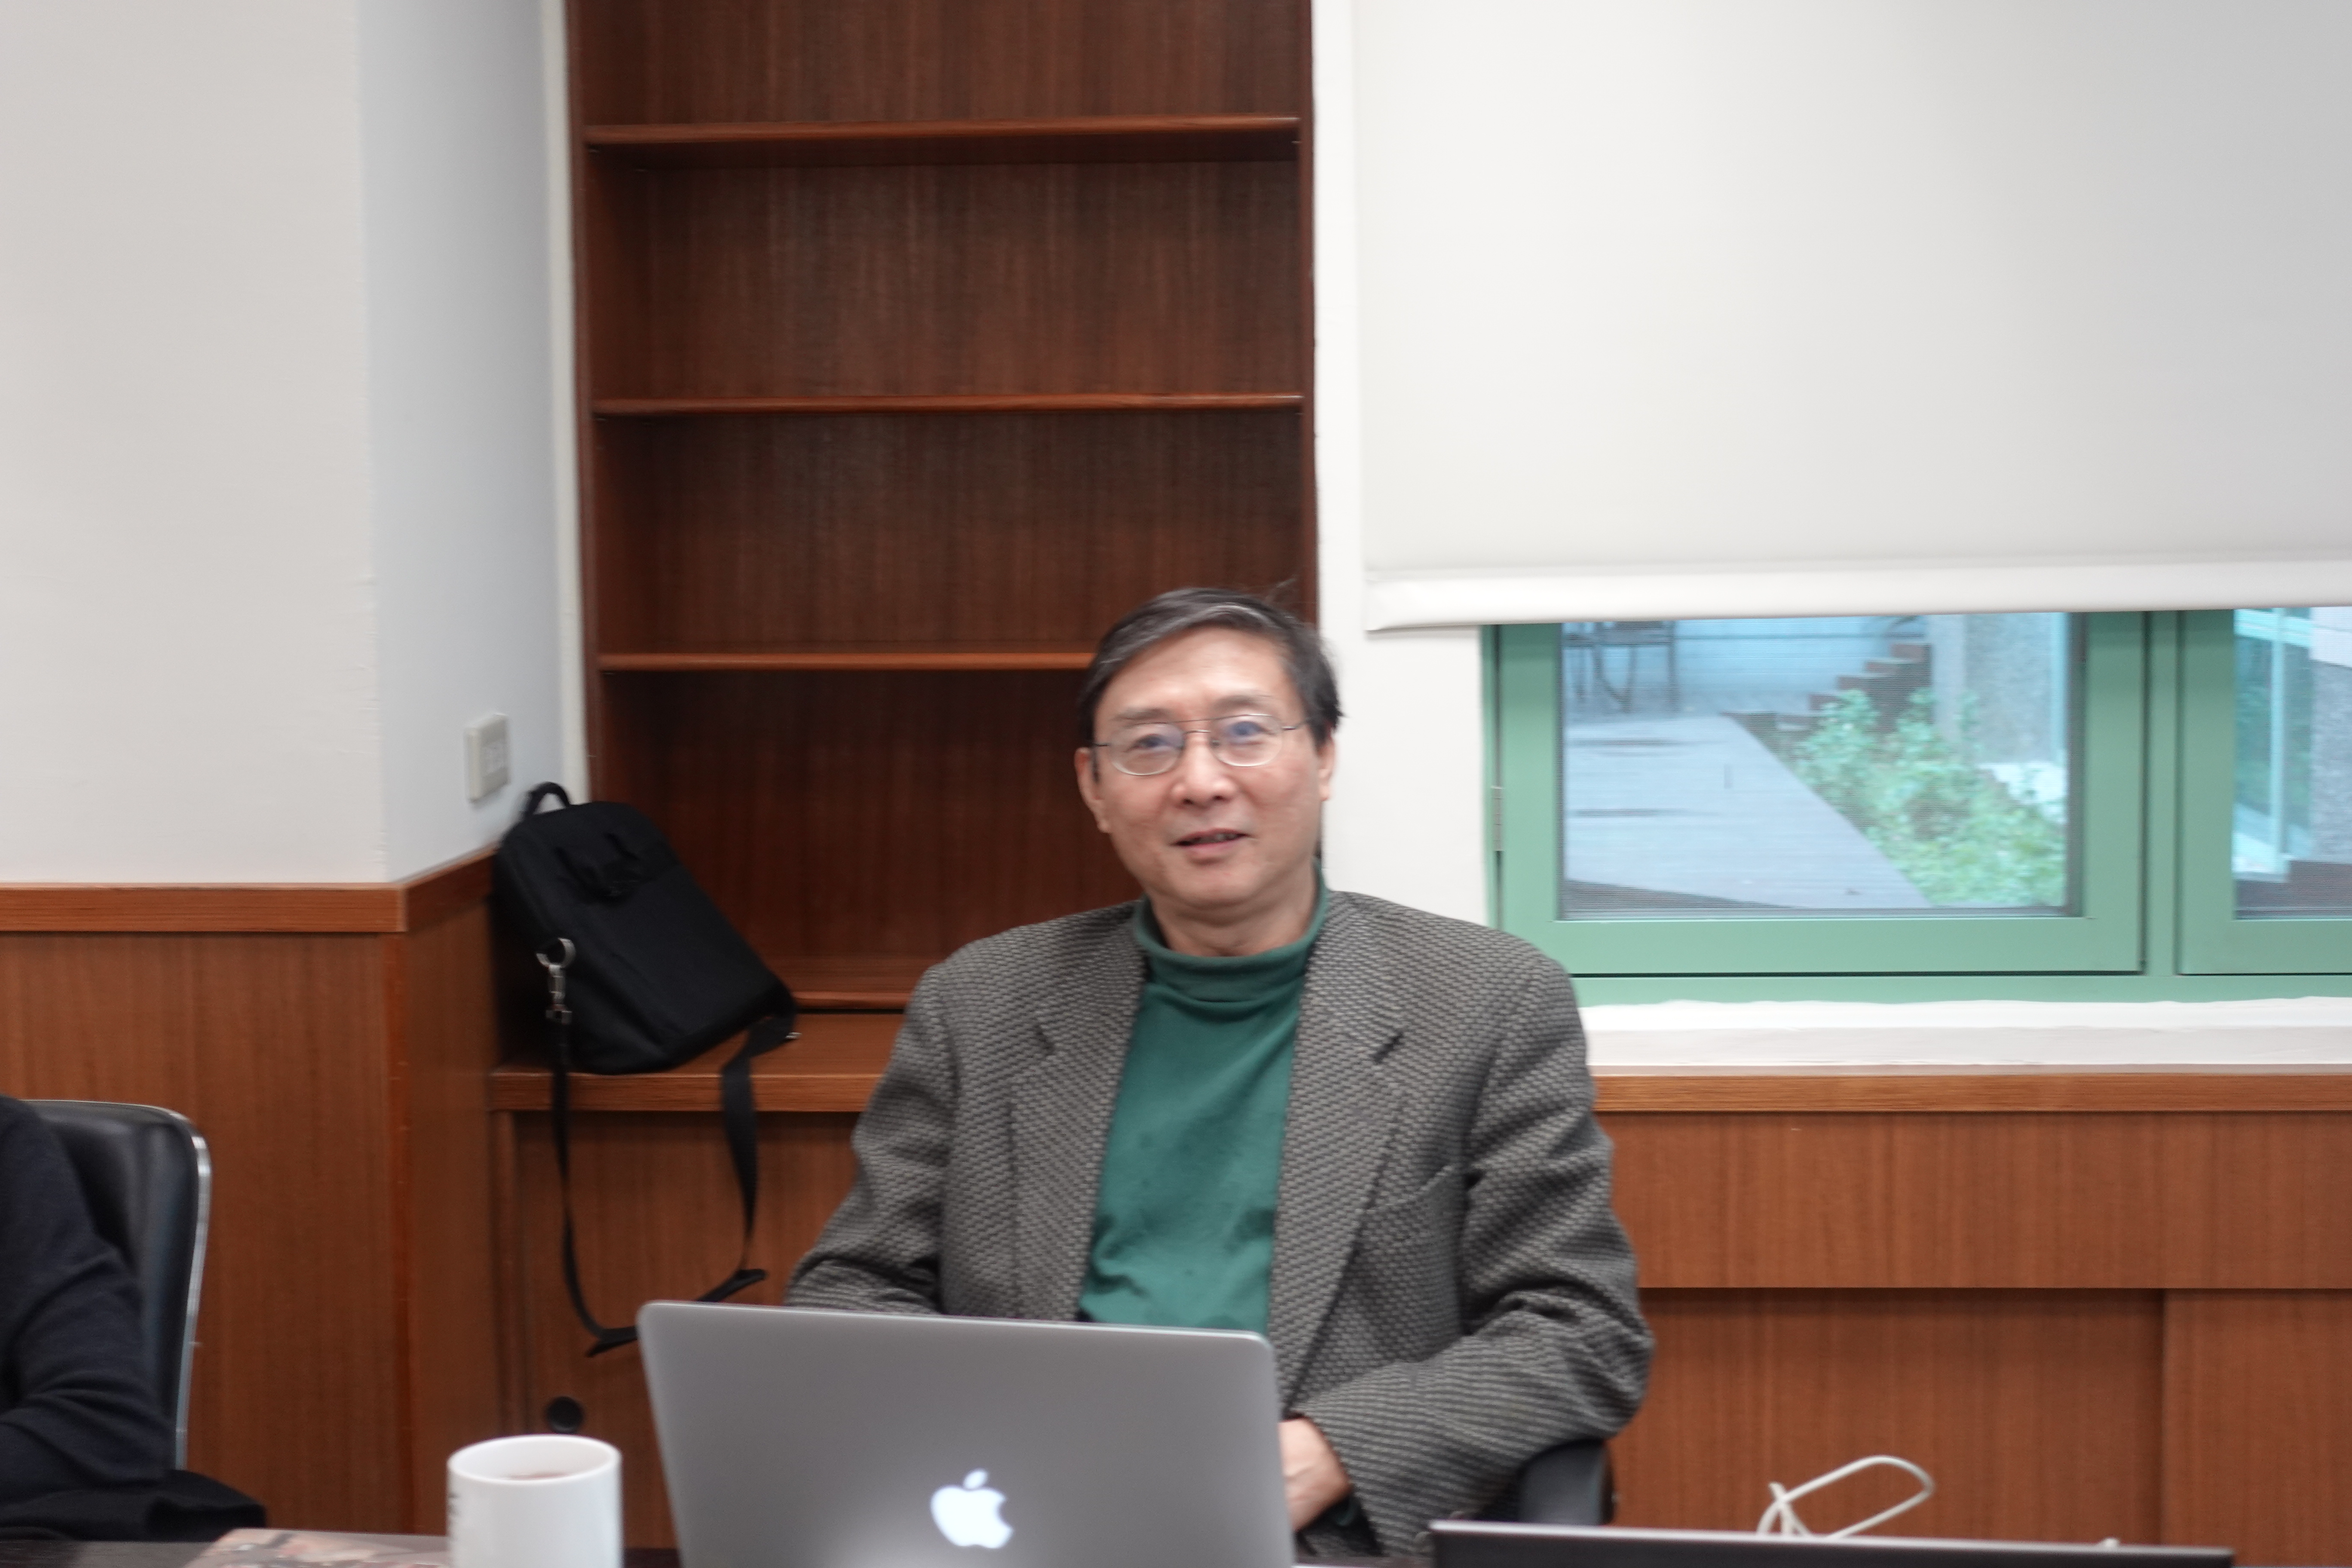 郭琦濤教授演講「晚明徽州的商化宗族與女性節烈」紀要